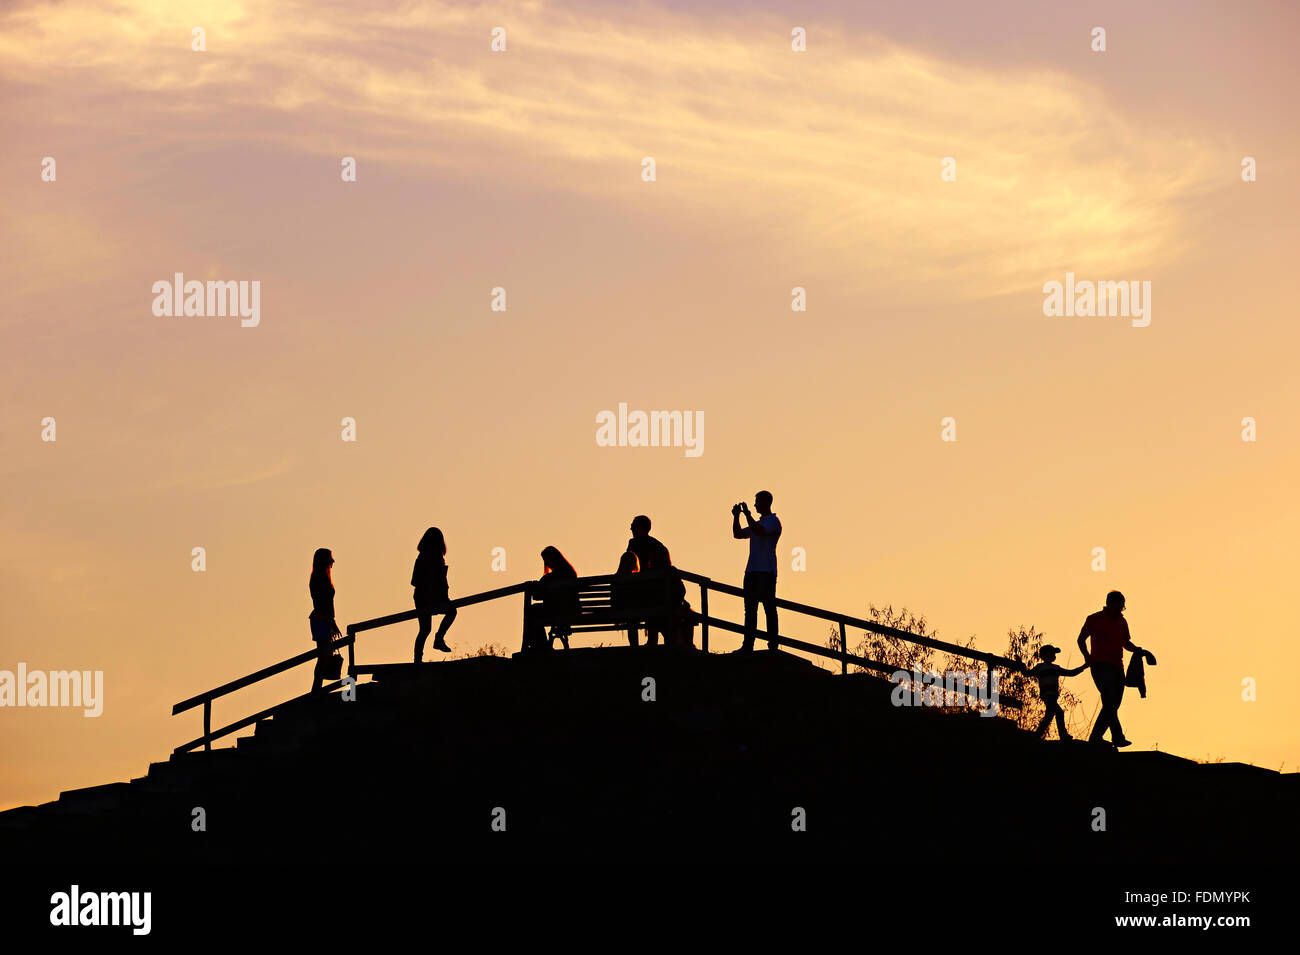 Silhouette d'un peuple sur une colline vue au coucher du soleil Banque D'Images